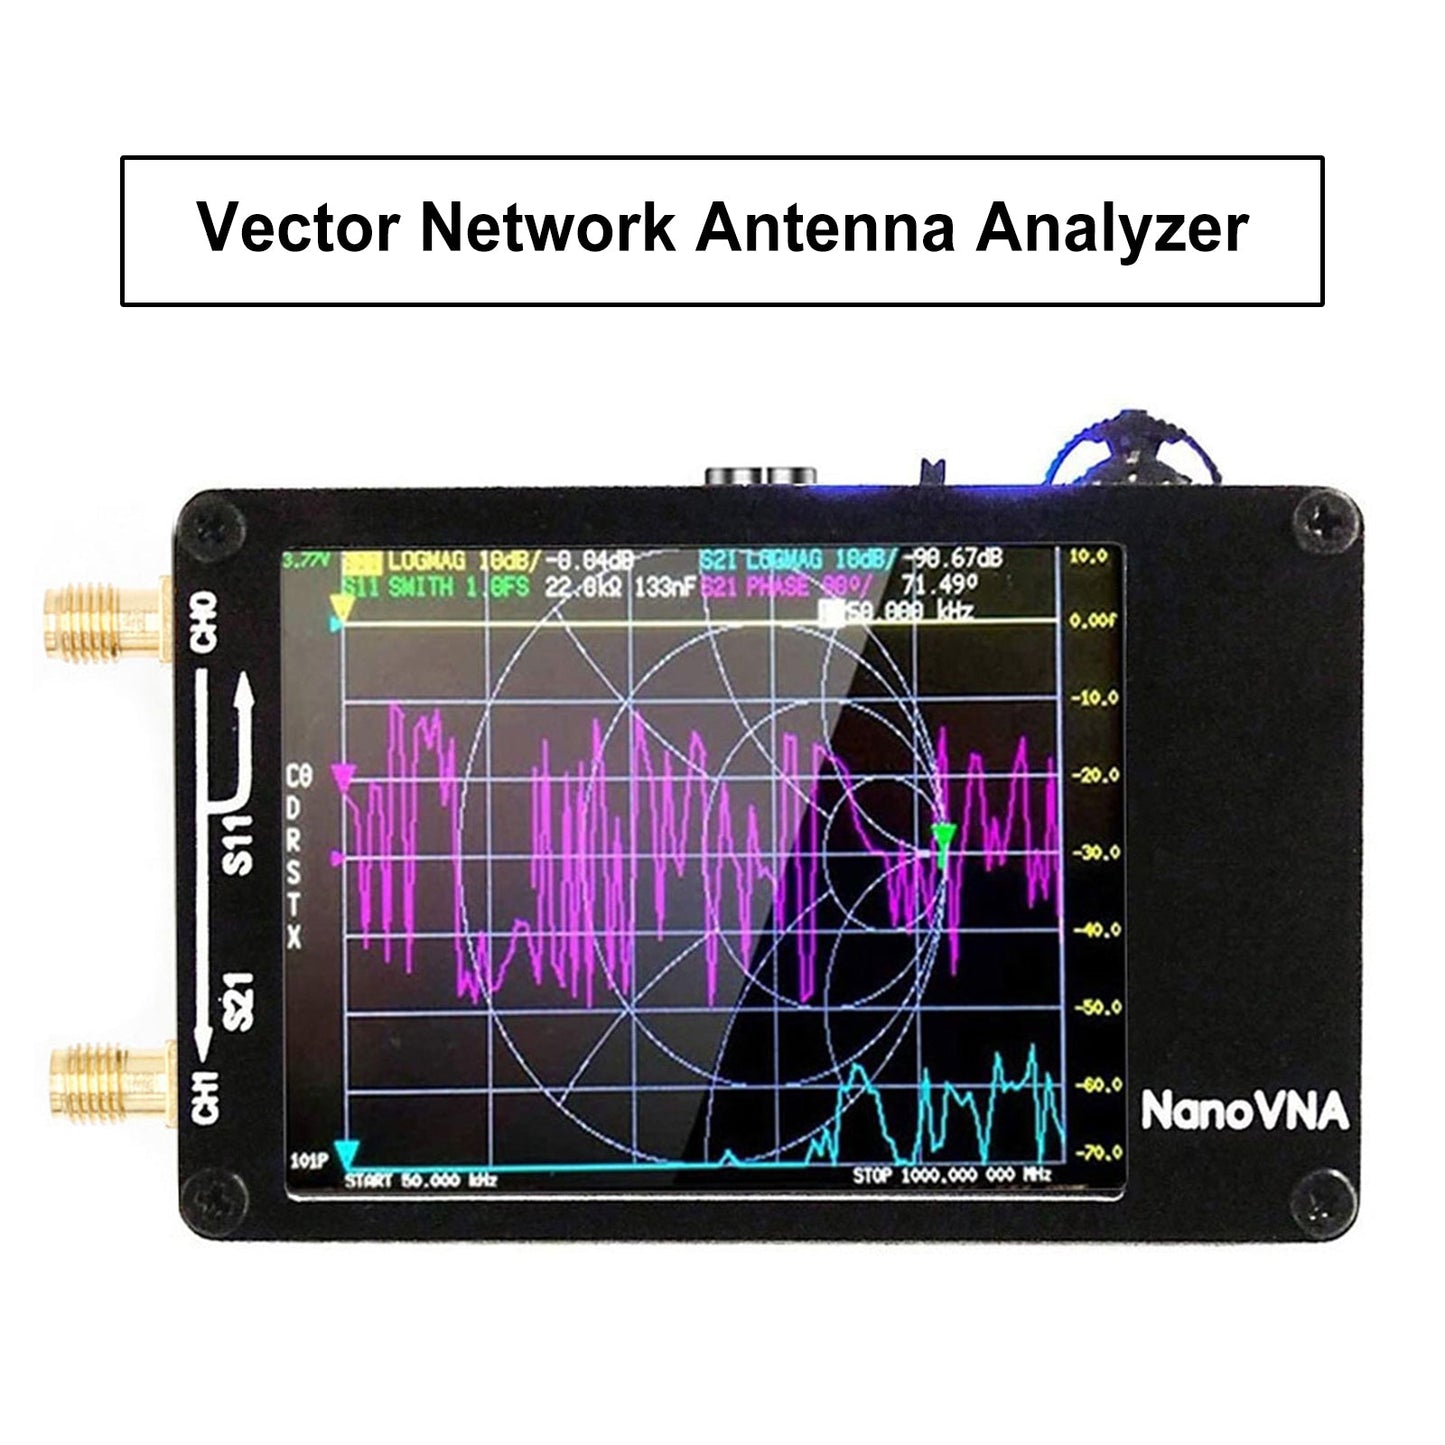 Analyseur d'antenne réseau vectoriel Nanovna H Analyseur MF HF VHF UHF avec emplacement pour carte SD